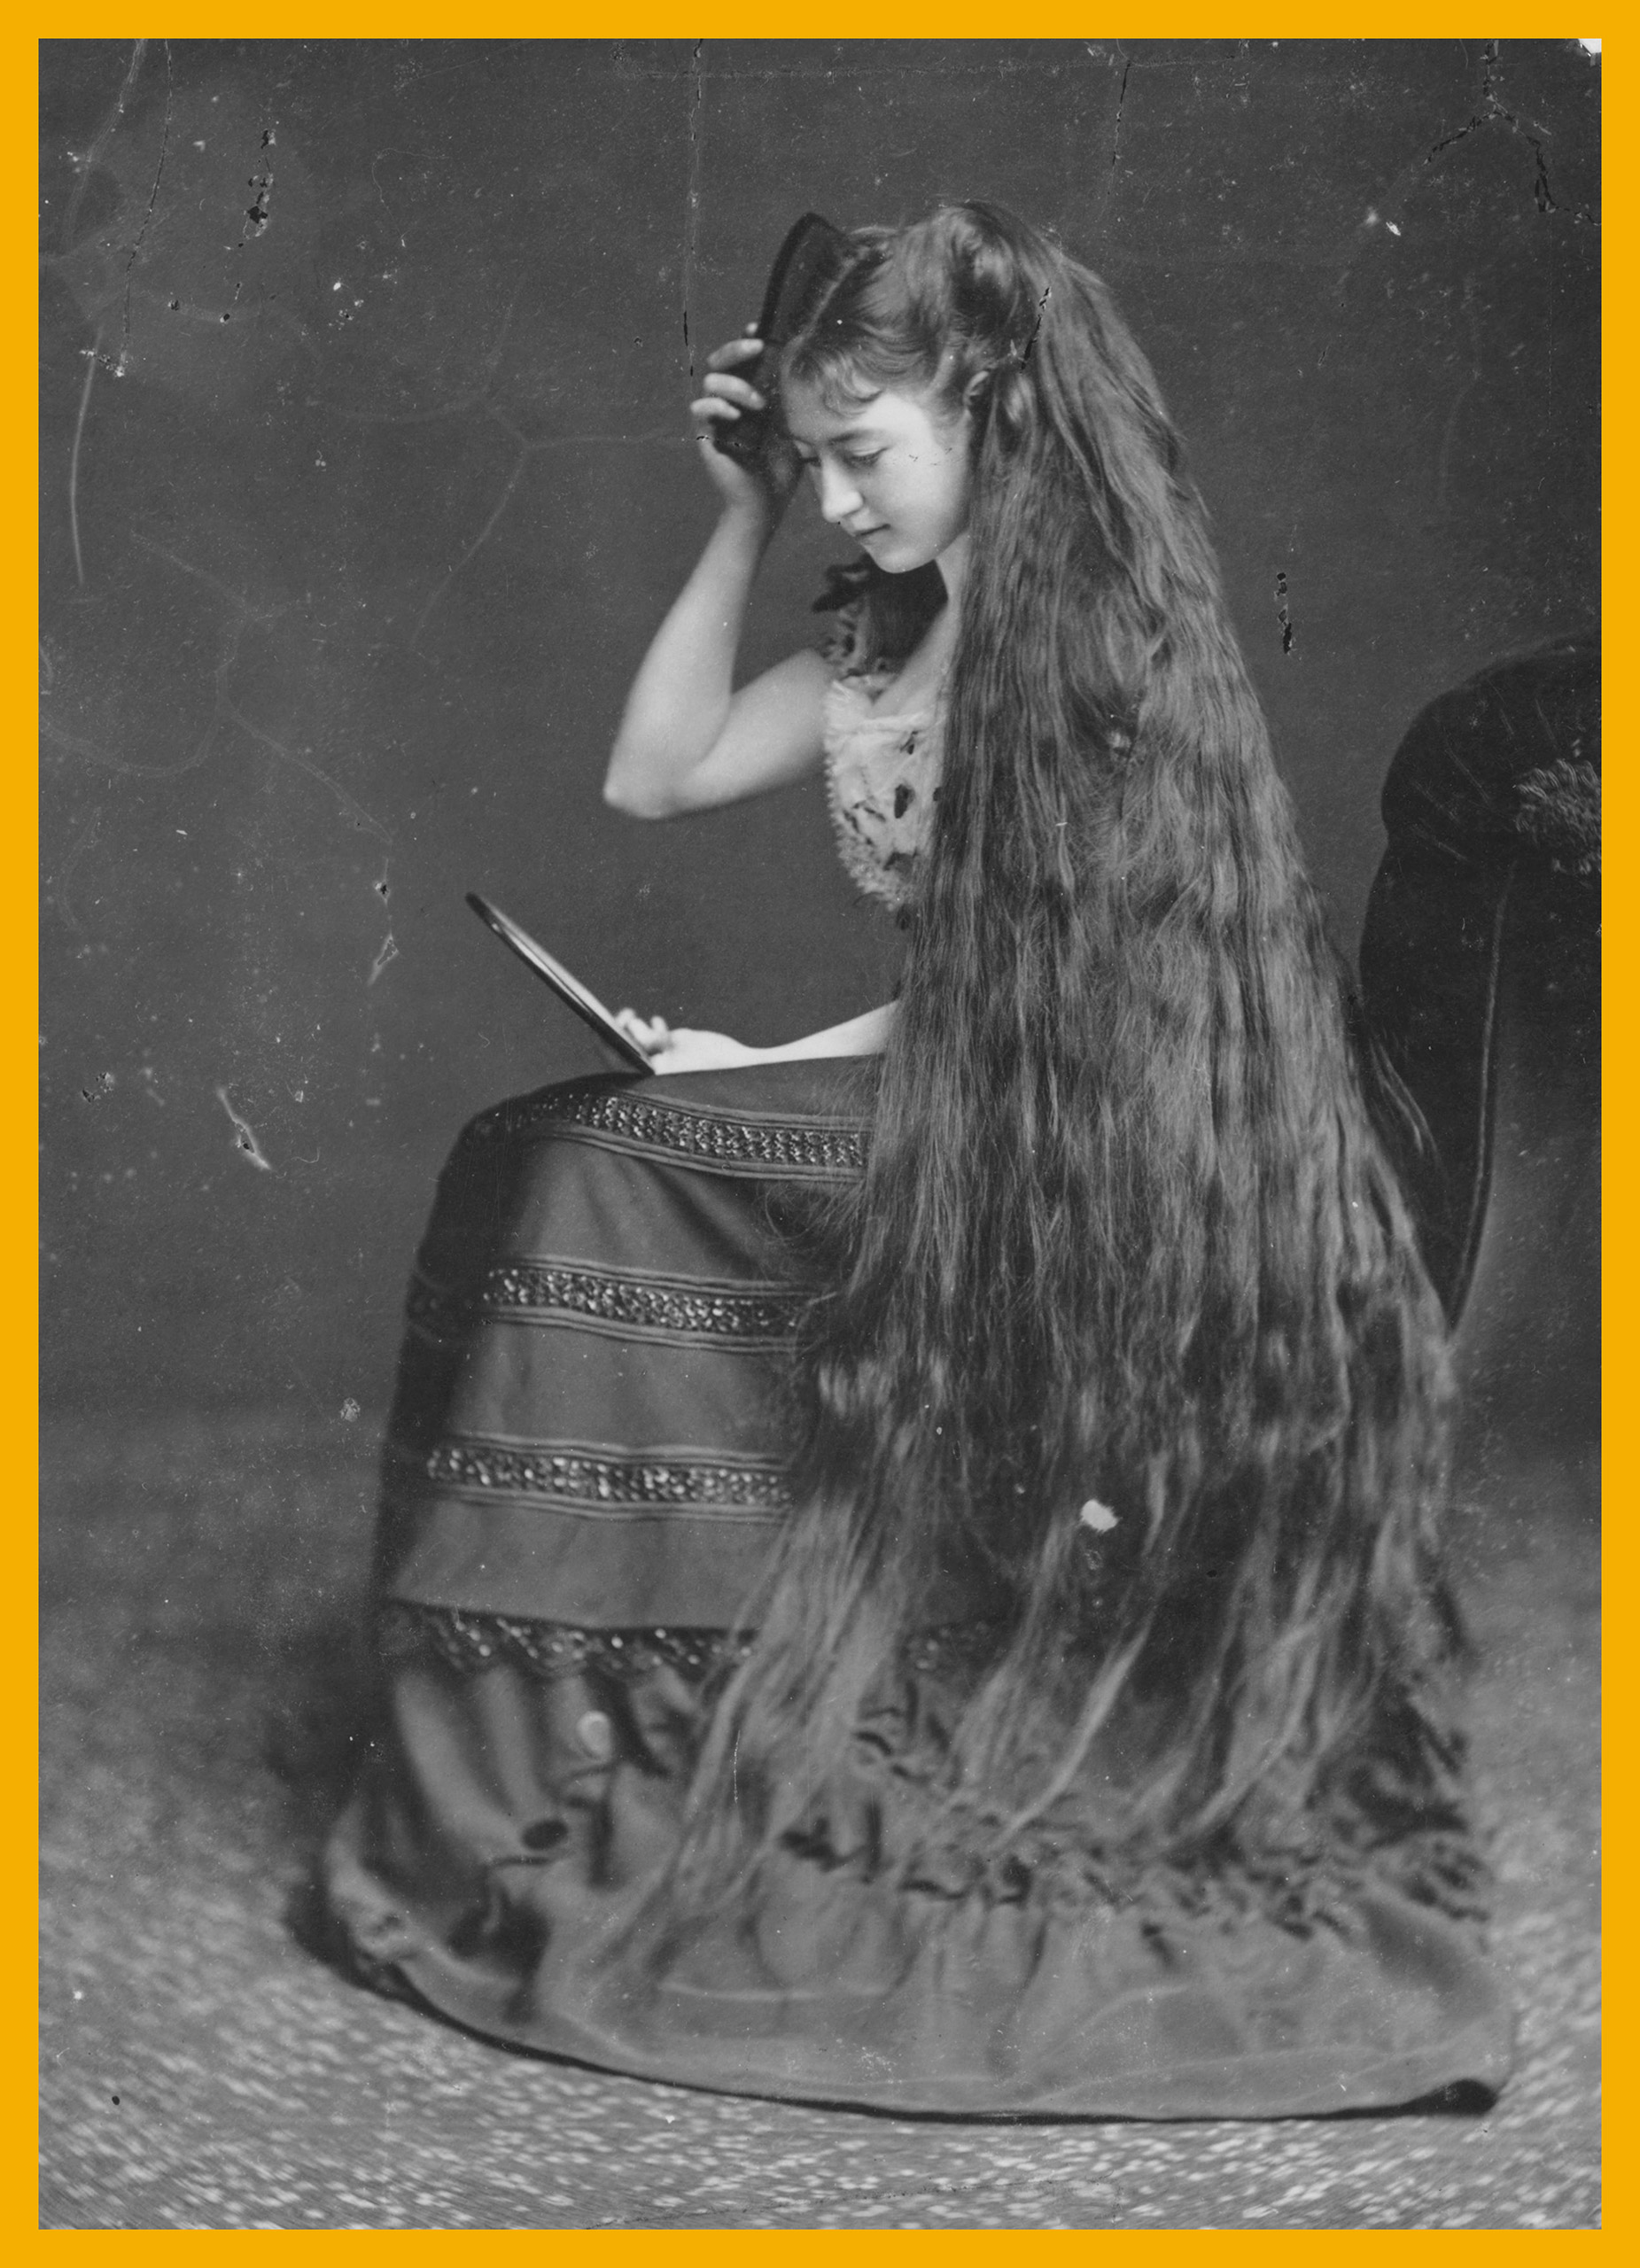 A woman combing her long hair circa 1885.